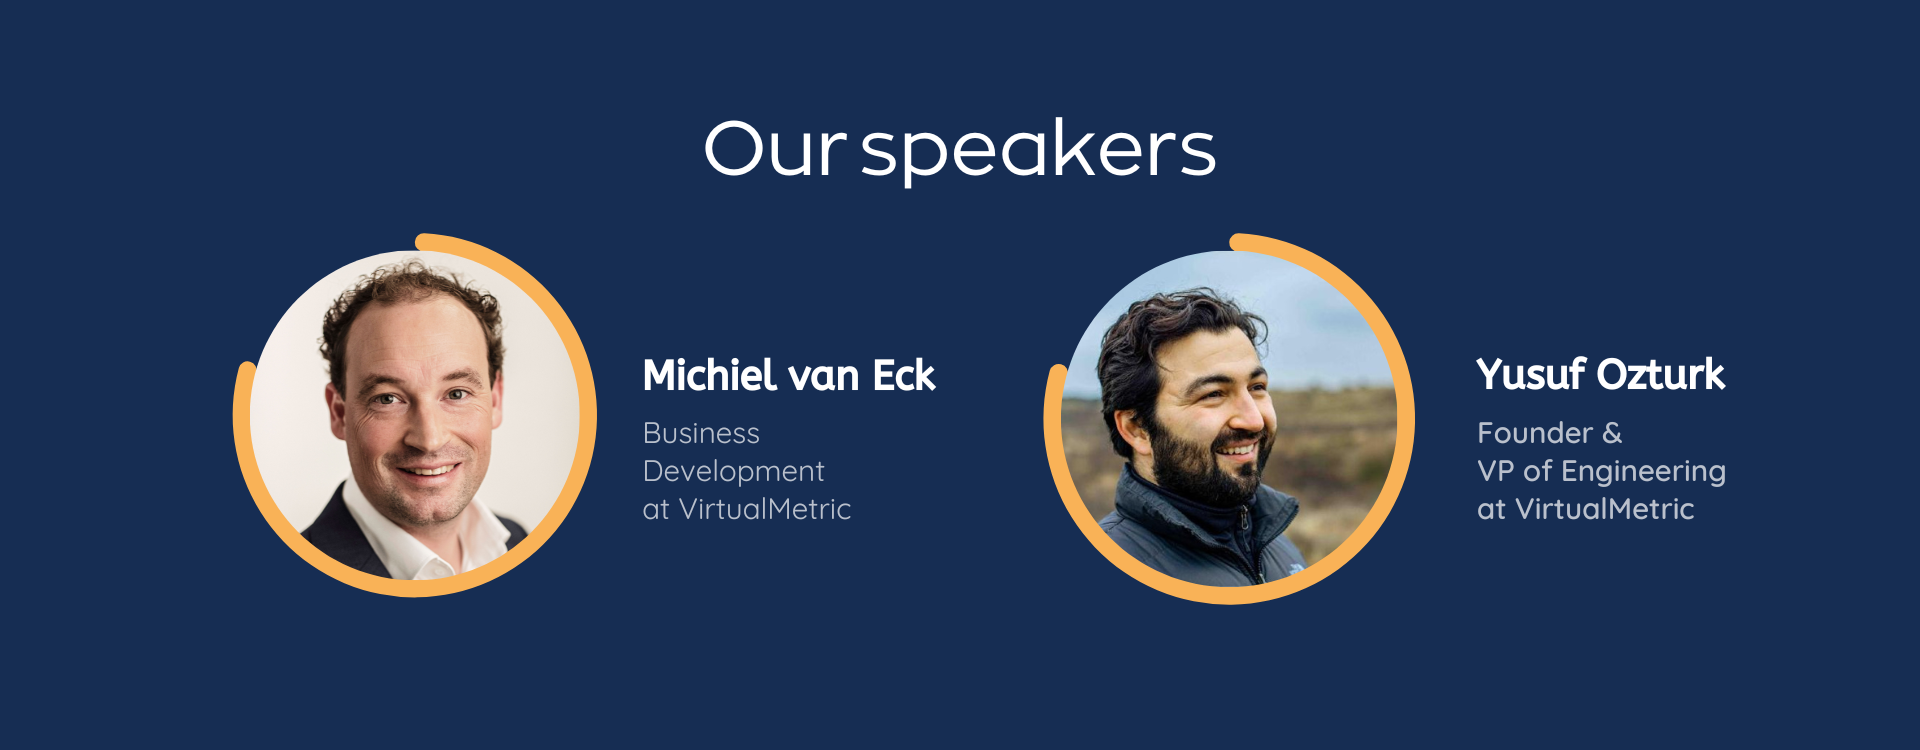 webinar speakers Yusuf Ozturk Michiel van Eck